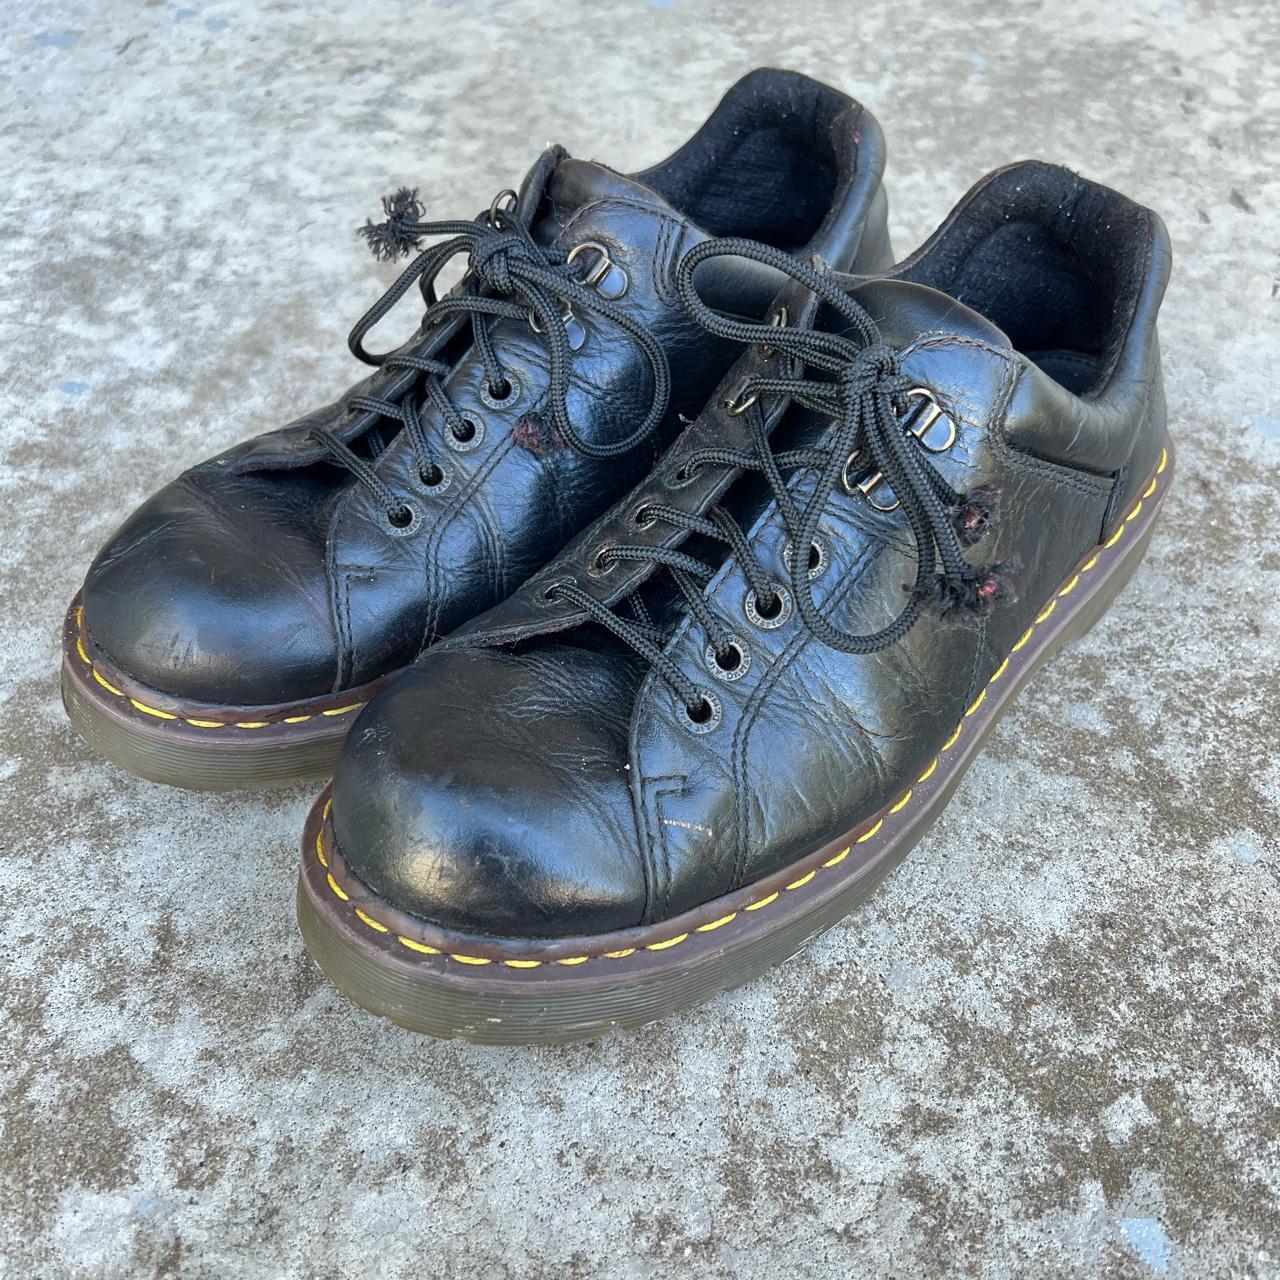 Dr Marten Platform Oxford Shoes / Vintage 1990’s... - Depop